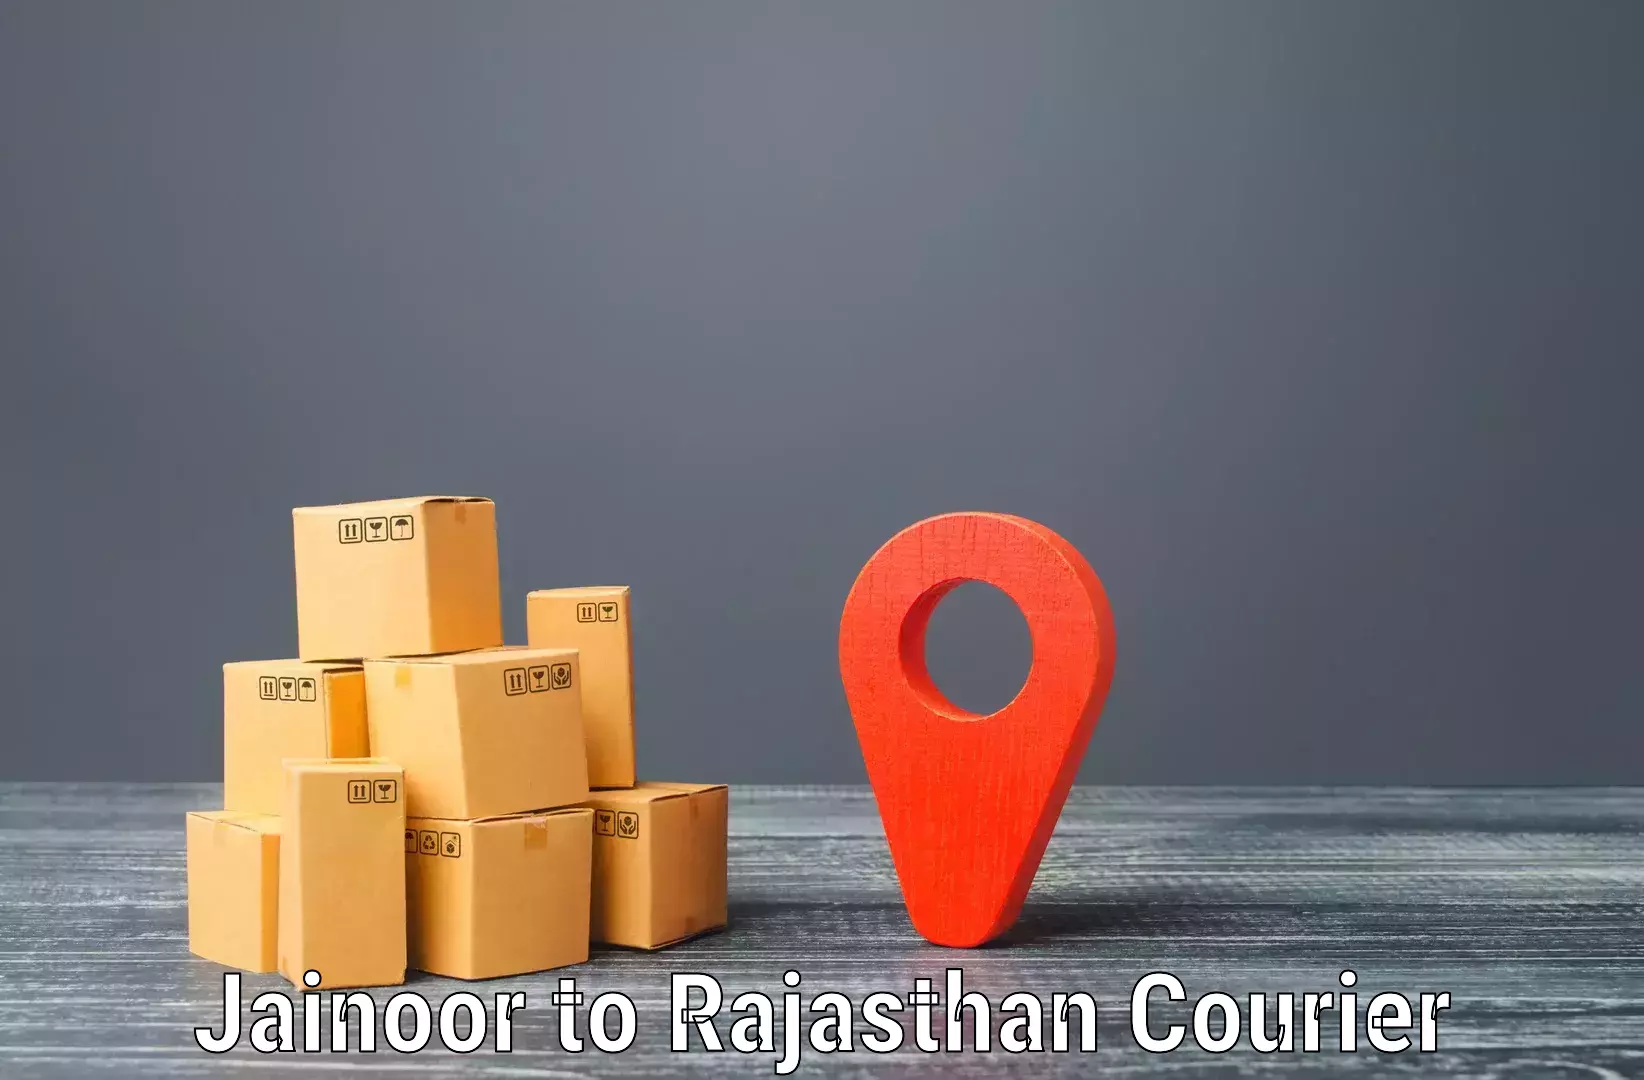 Courier service comparison in Jainoor to Kota